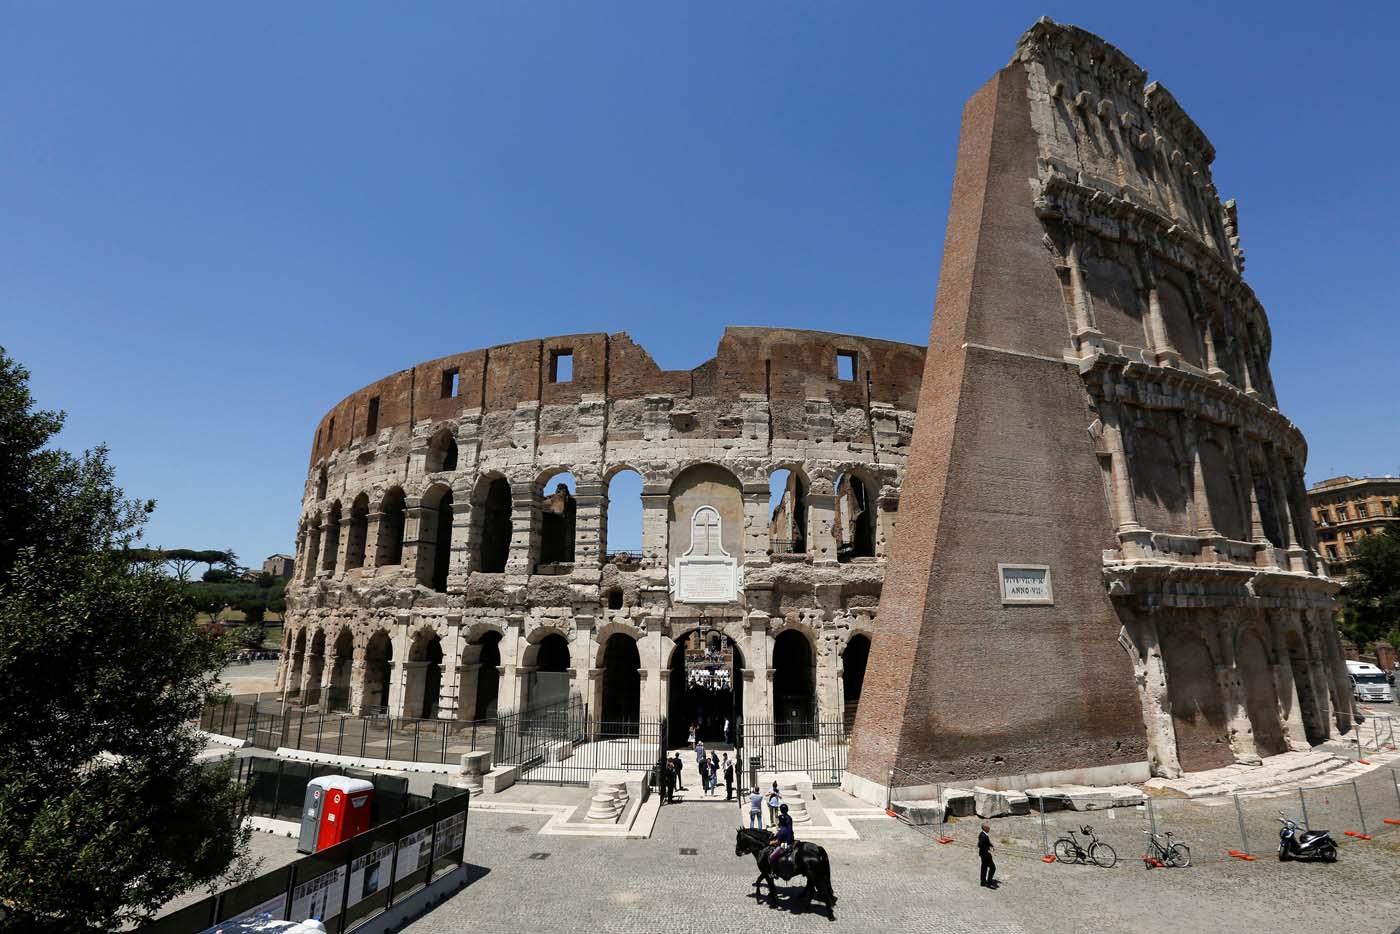 El Coliseo romano recuperó su esplendor (fotos)